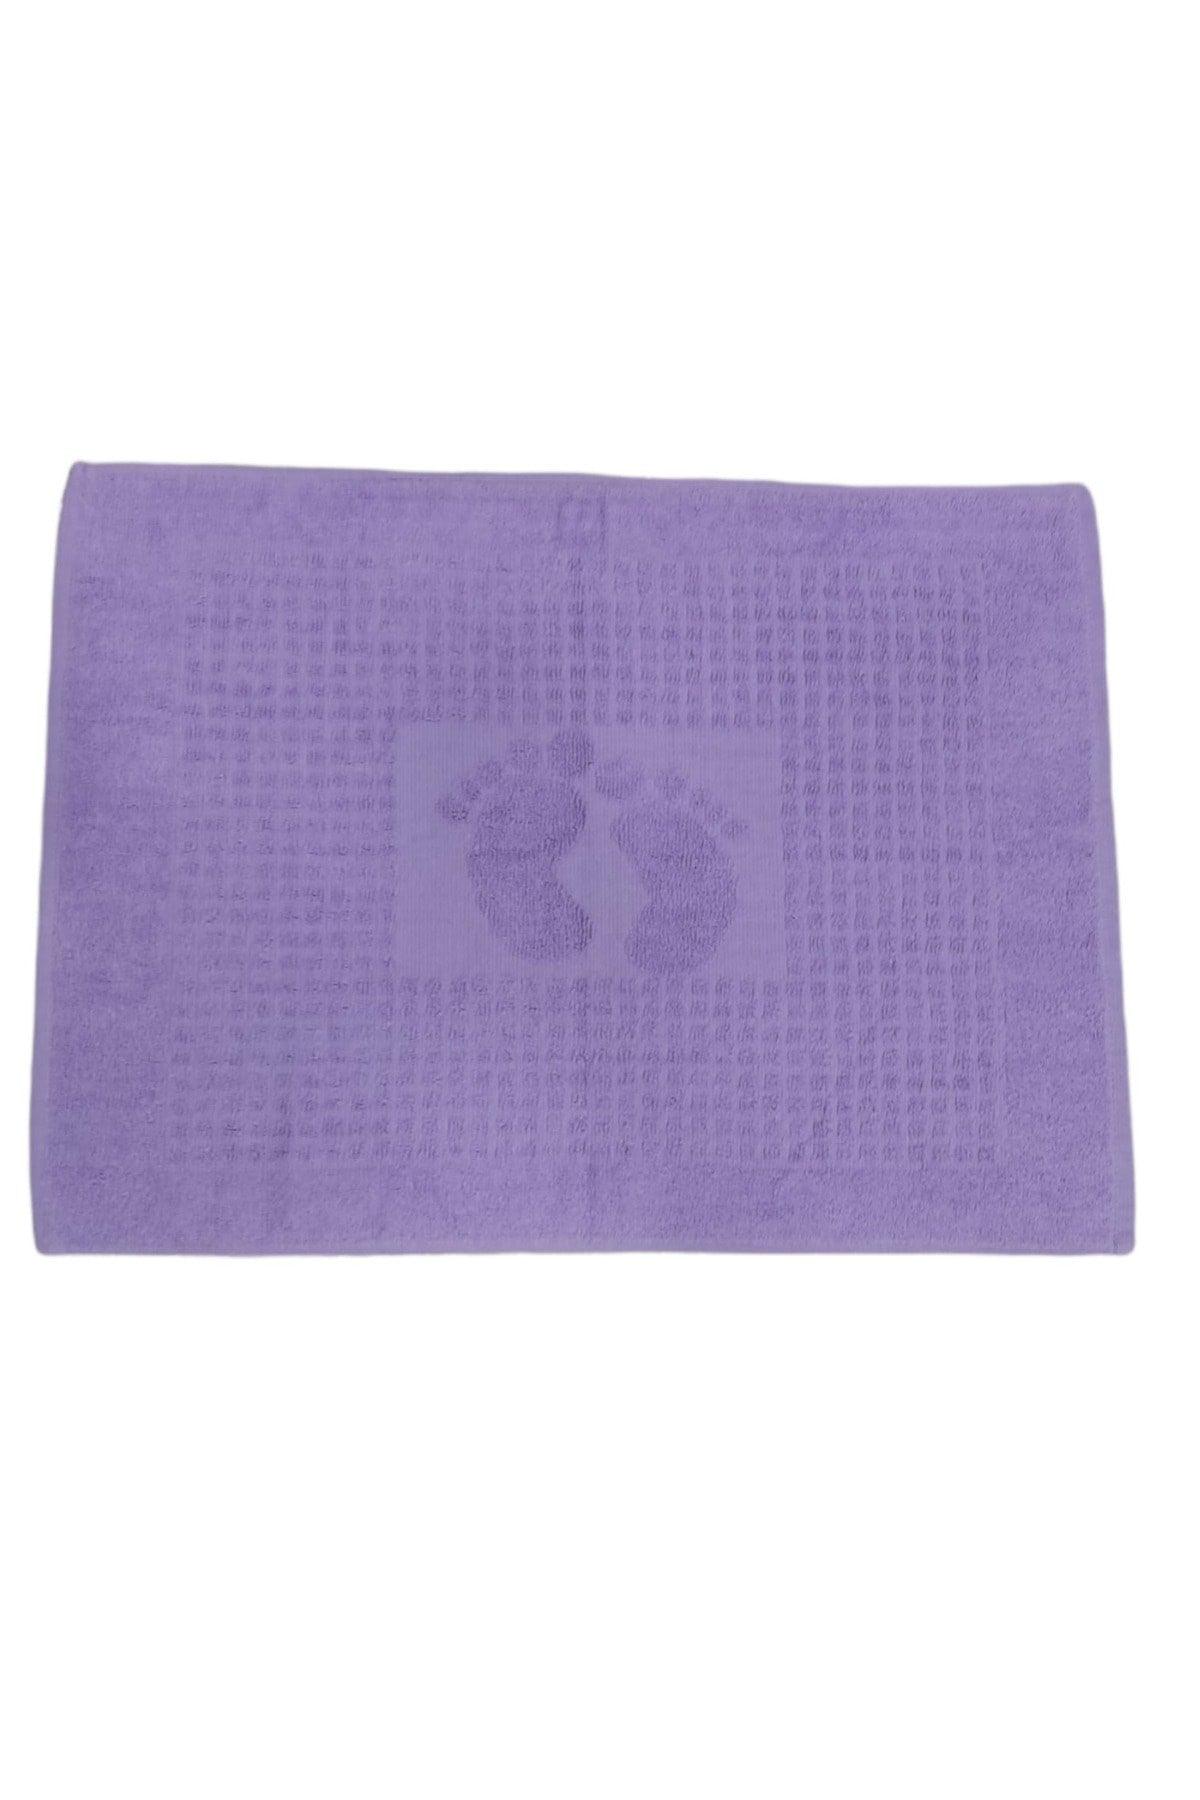 100% Cotton Foot Towel 50x70 cm